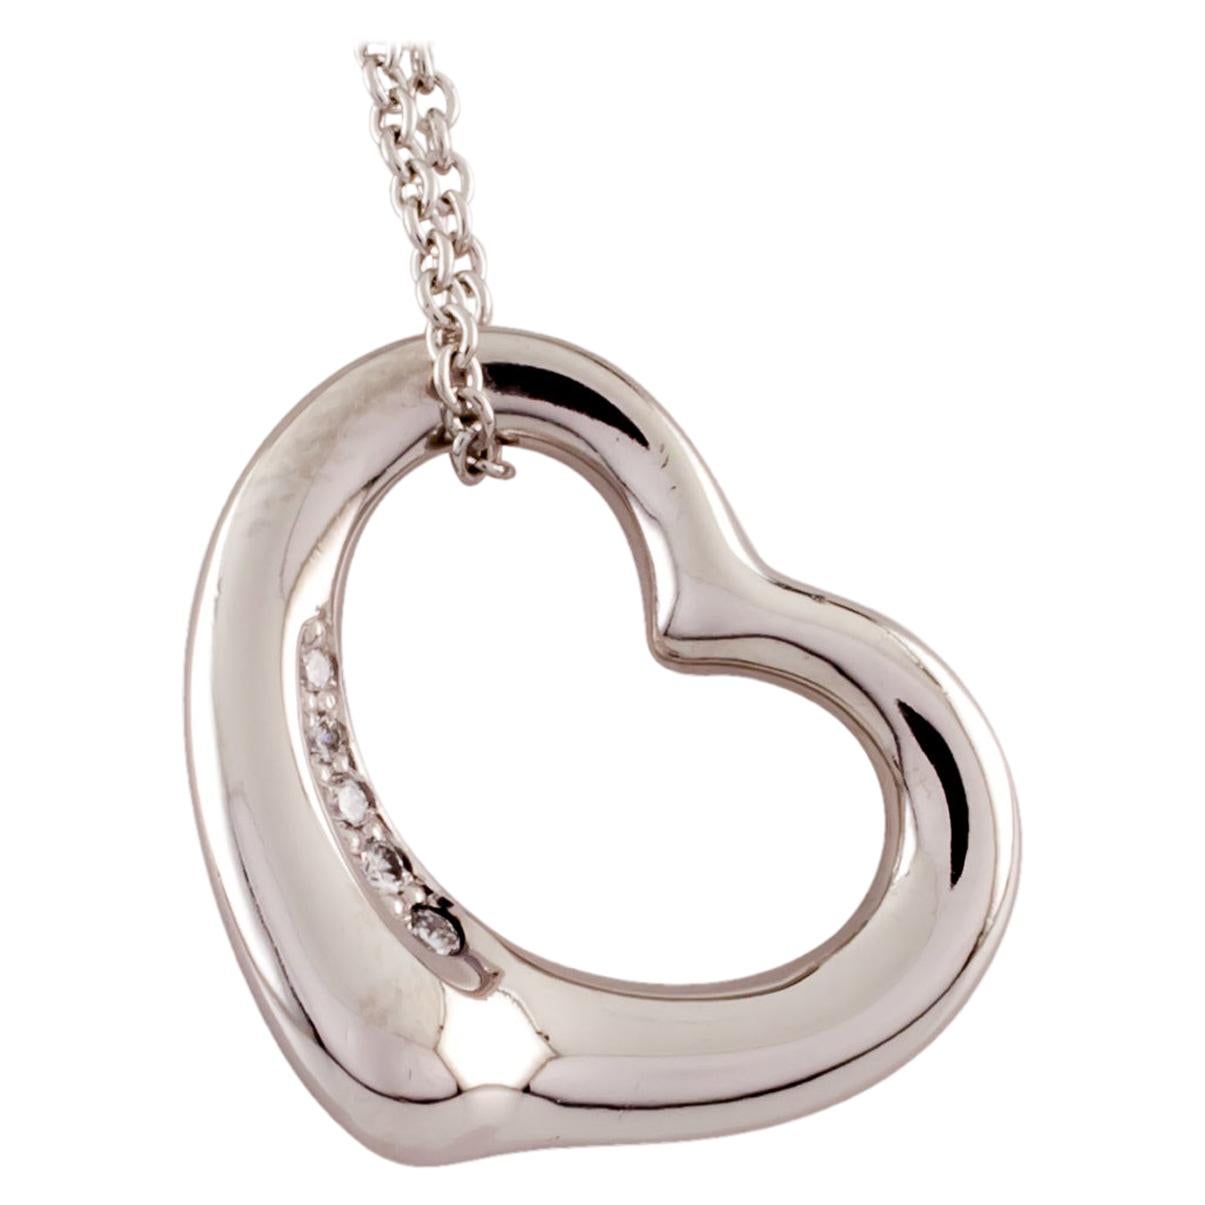 Tiffany & Co. Elsa Peretti Open Heart Platinum Pendant with Diamond and Chain